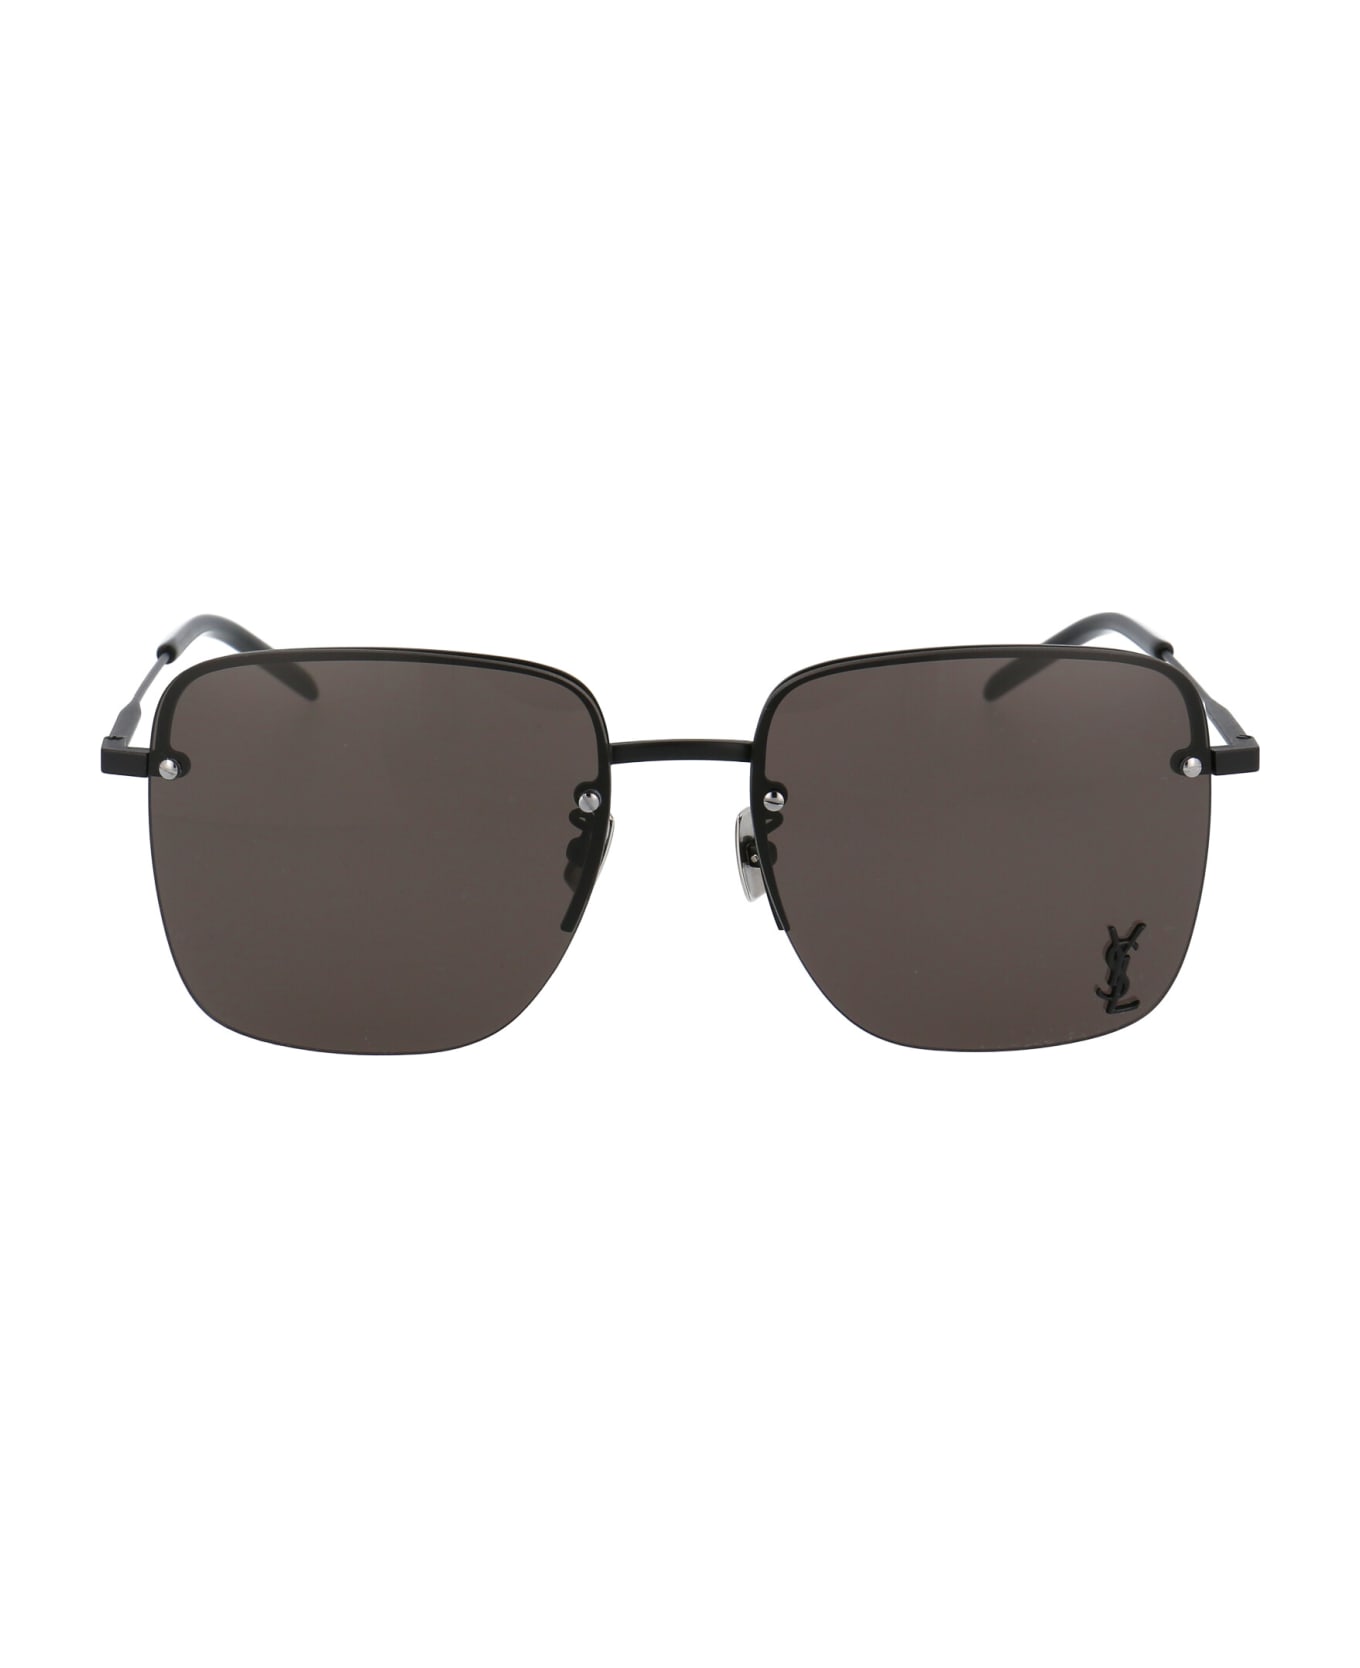 Saint Laurent Eyewear Sl 312 M Sunglasses - 001 BLACK BLACK BLACK